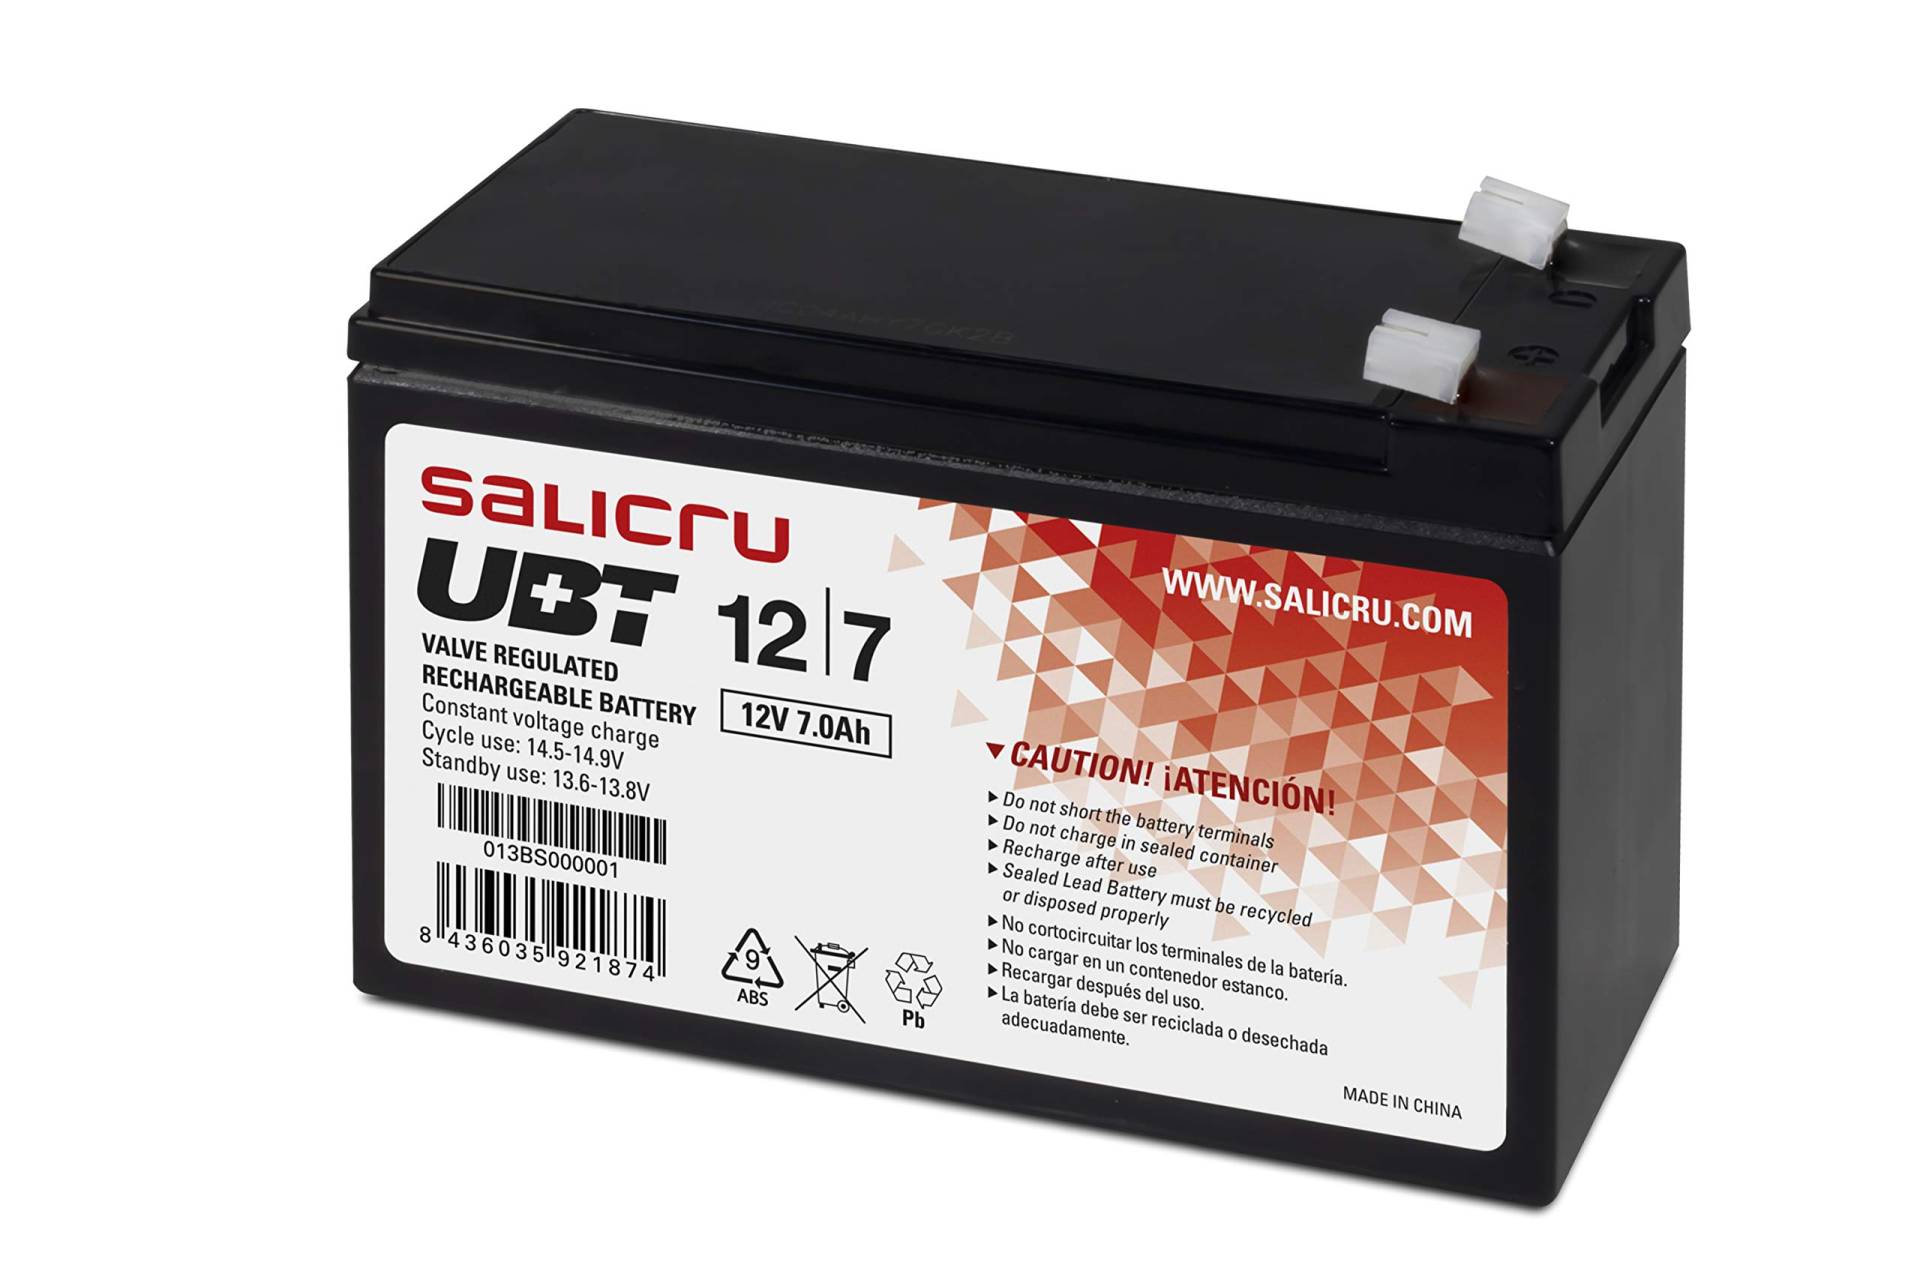 USV-Batterie SALICRU UBT 12 V/7 Ah von Salicru